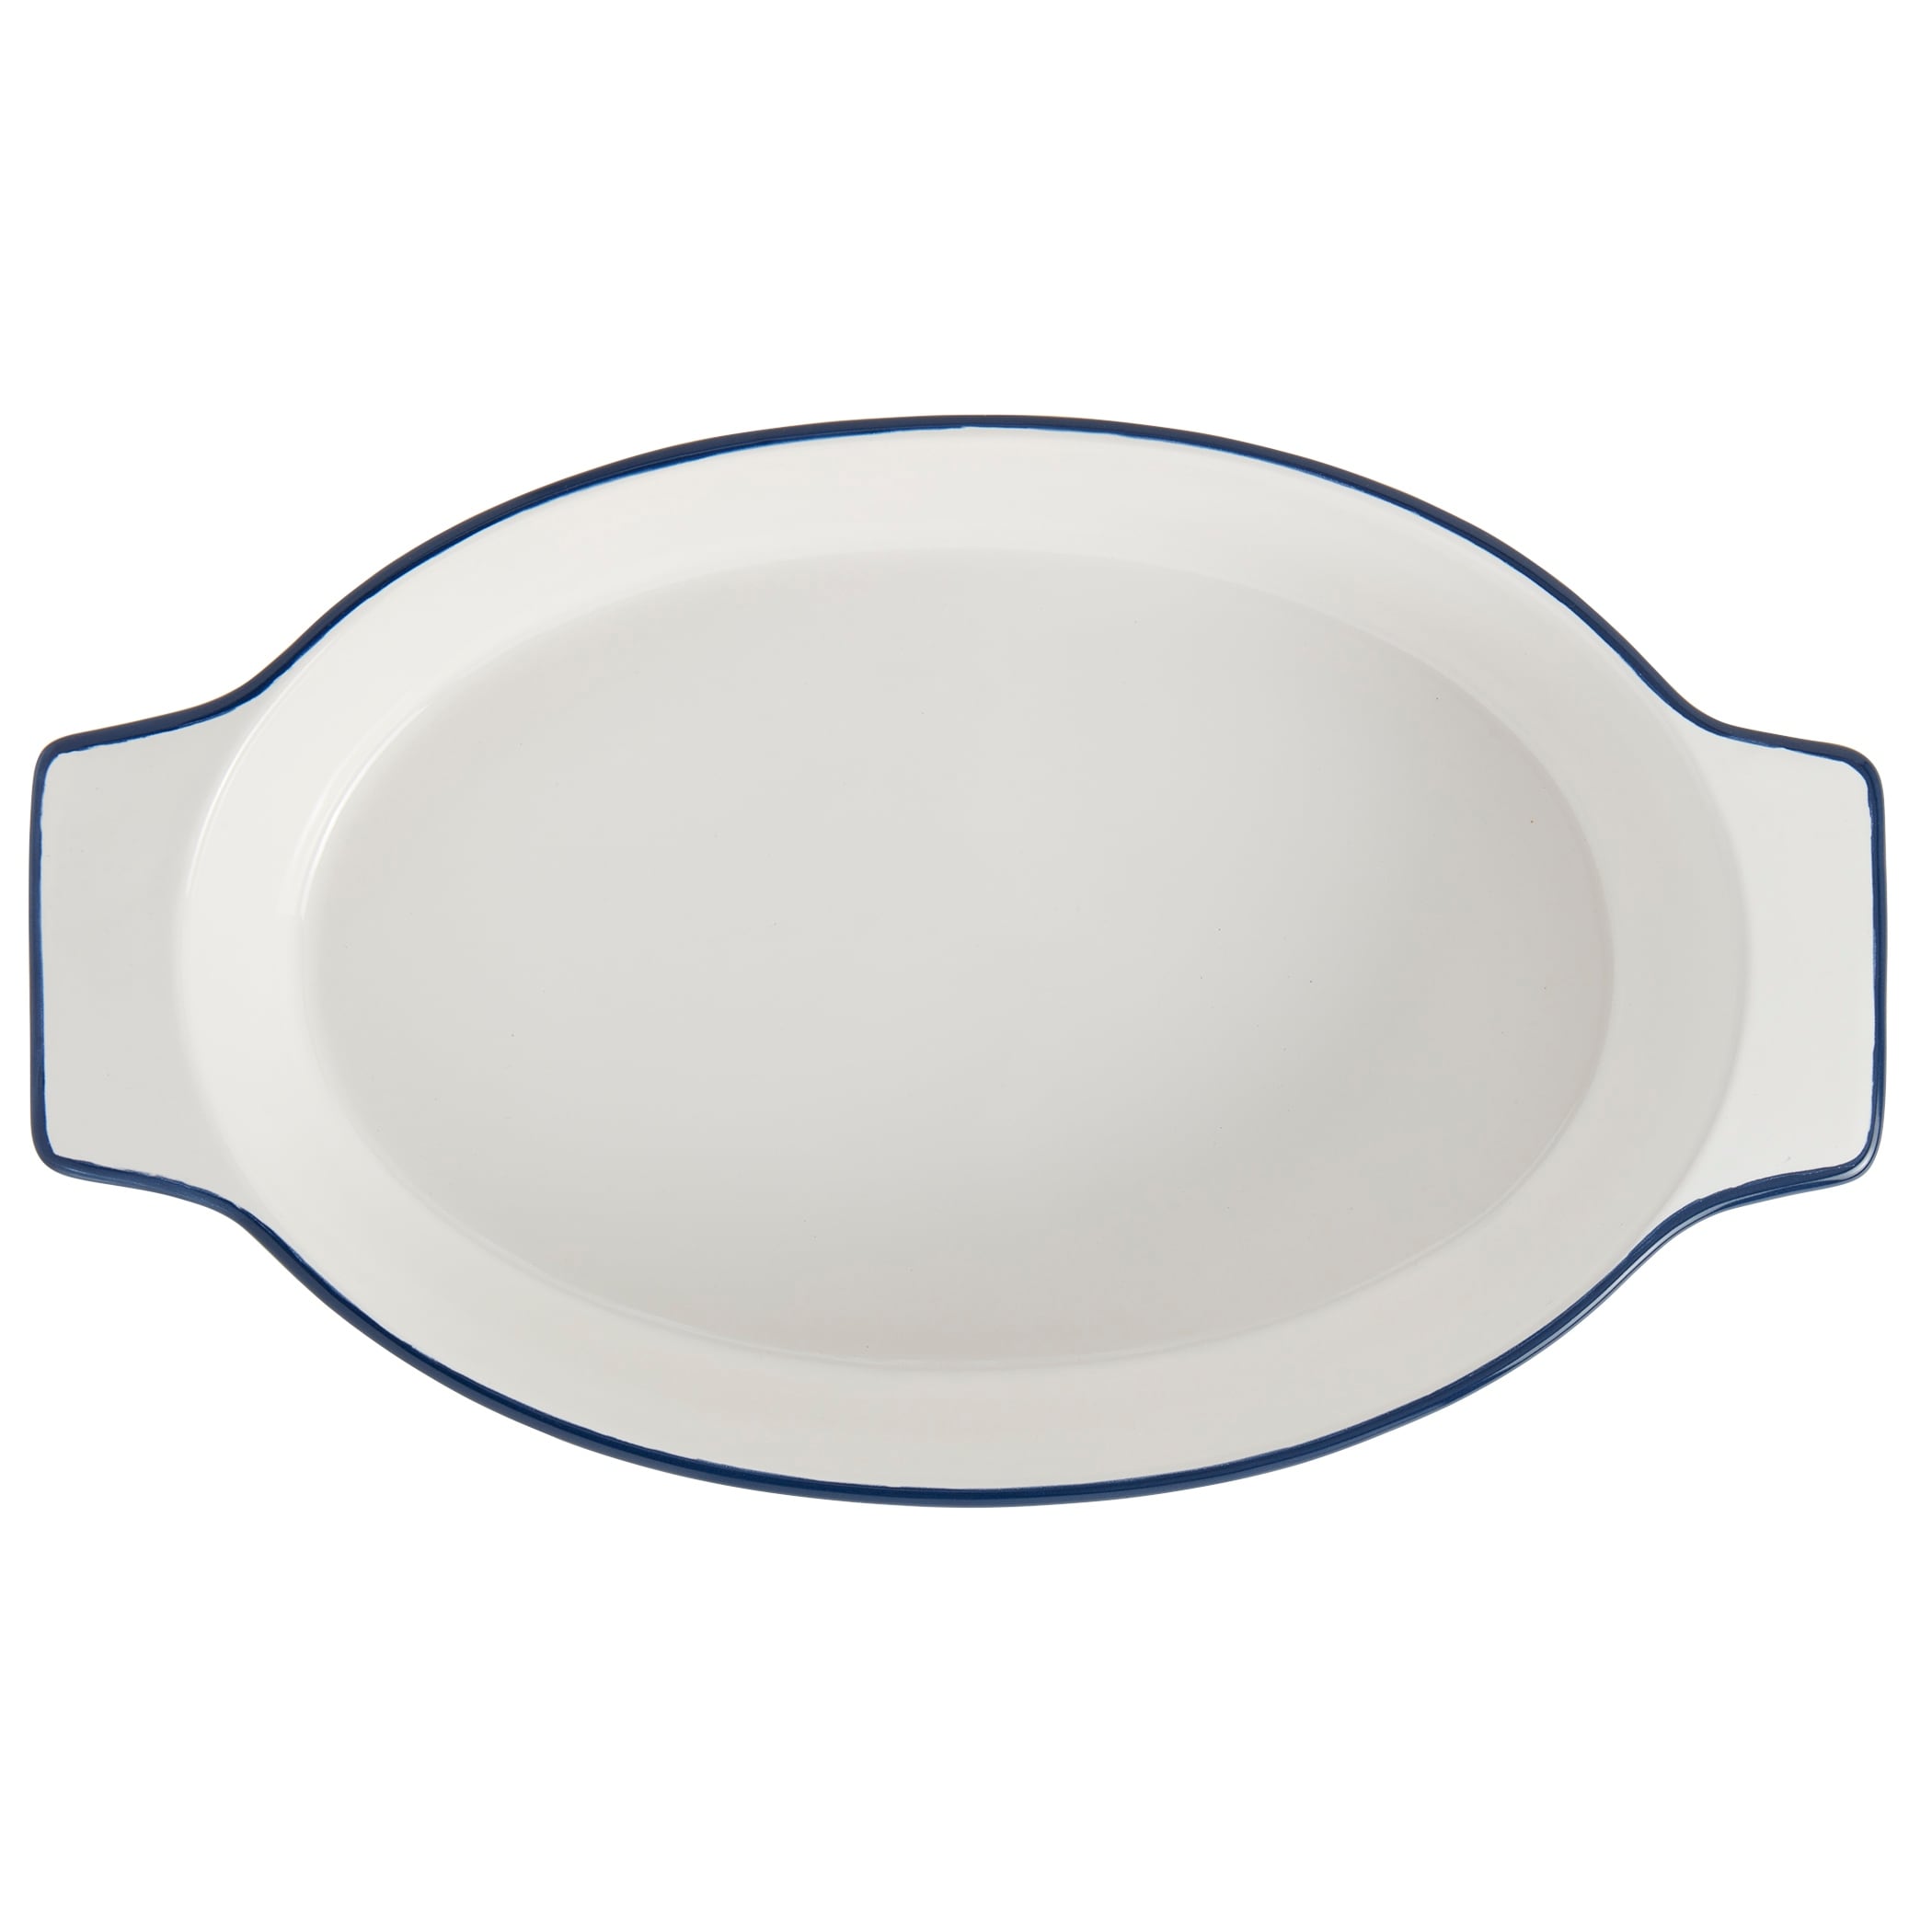 Denmark Tools for Cooks 15 x 9 Oval White Ceramic Baker w/ Blue Rim - 15x10